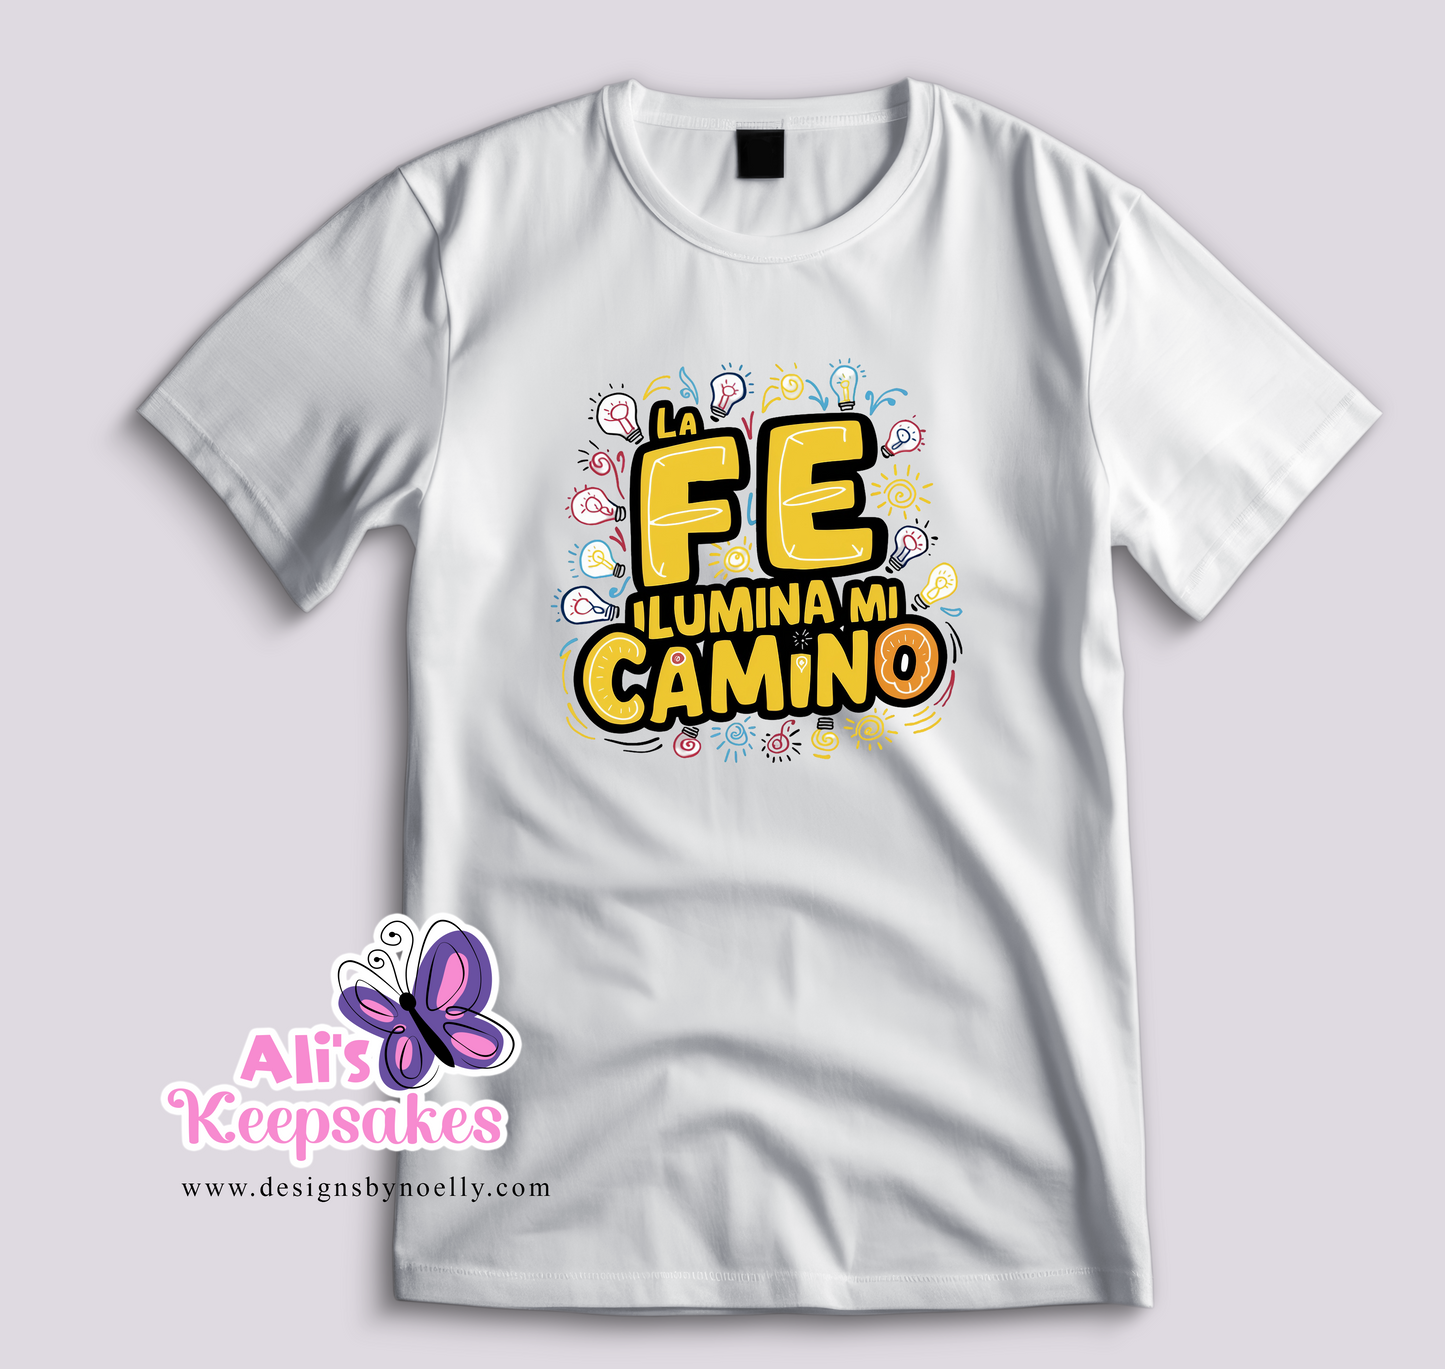 T-Shirt "La Fe Illumina mi Camino"